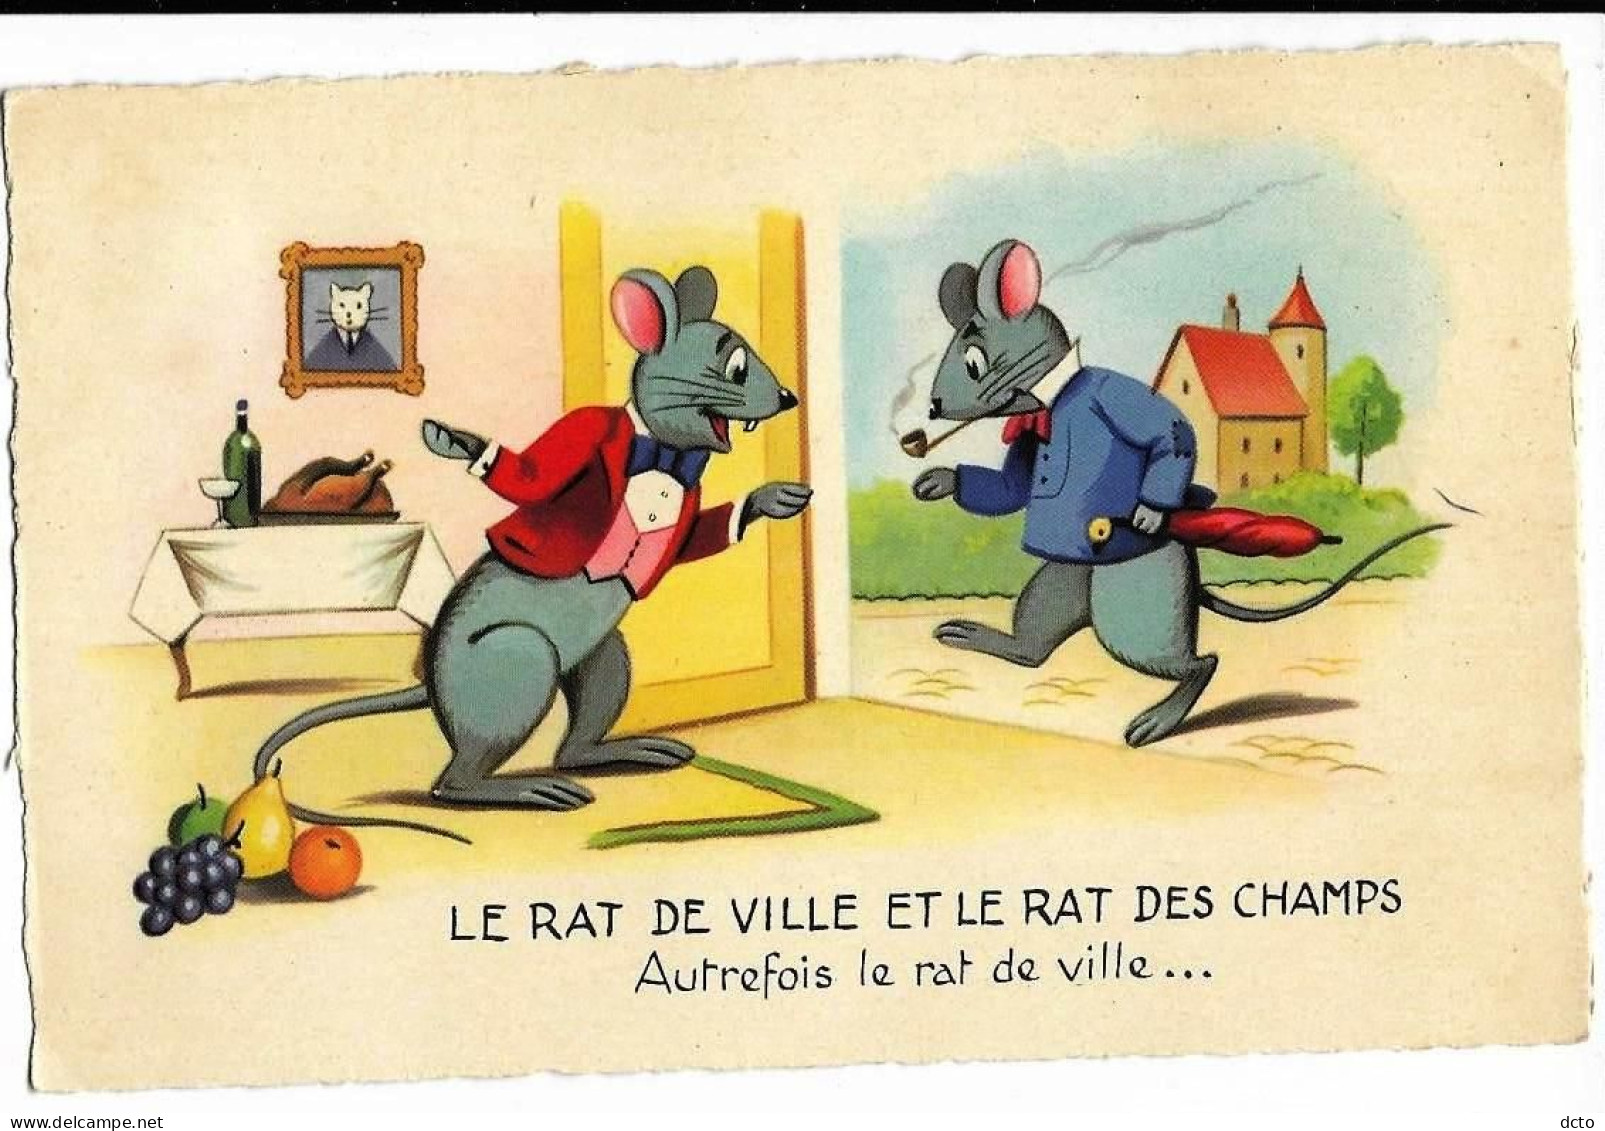 Fable La Fontaine Le Rat De Ville Et Le Rat Des Champs Autrefois Le Rat De Ville... Illustration Ed. JG, Cpsm Pf - Contes, Fables & Légendes